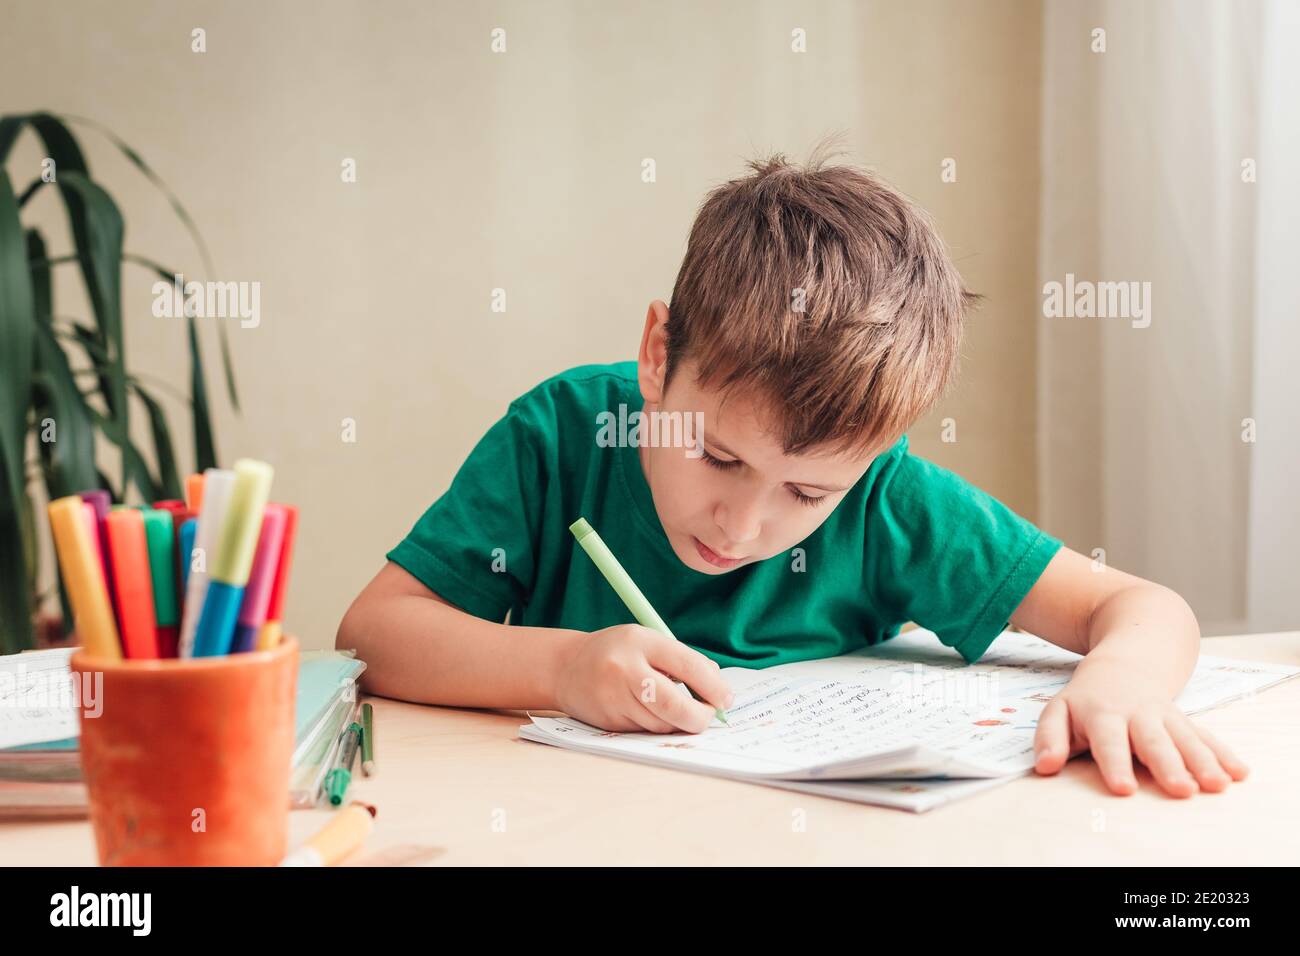 Nettes 7 Jahre altes Kind, das seine Hausaufgaben macht, am Schreibtisch sitzend. Junge schreiben in Notebook. Stockfoto